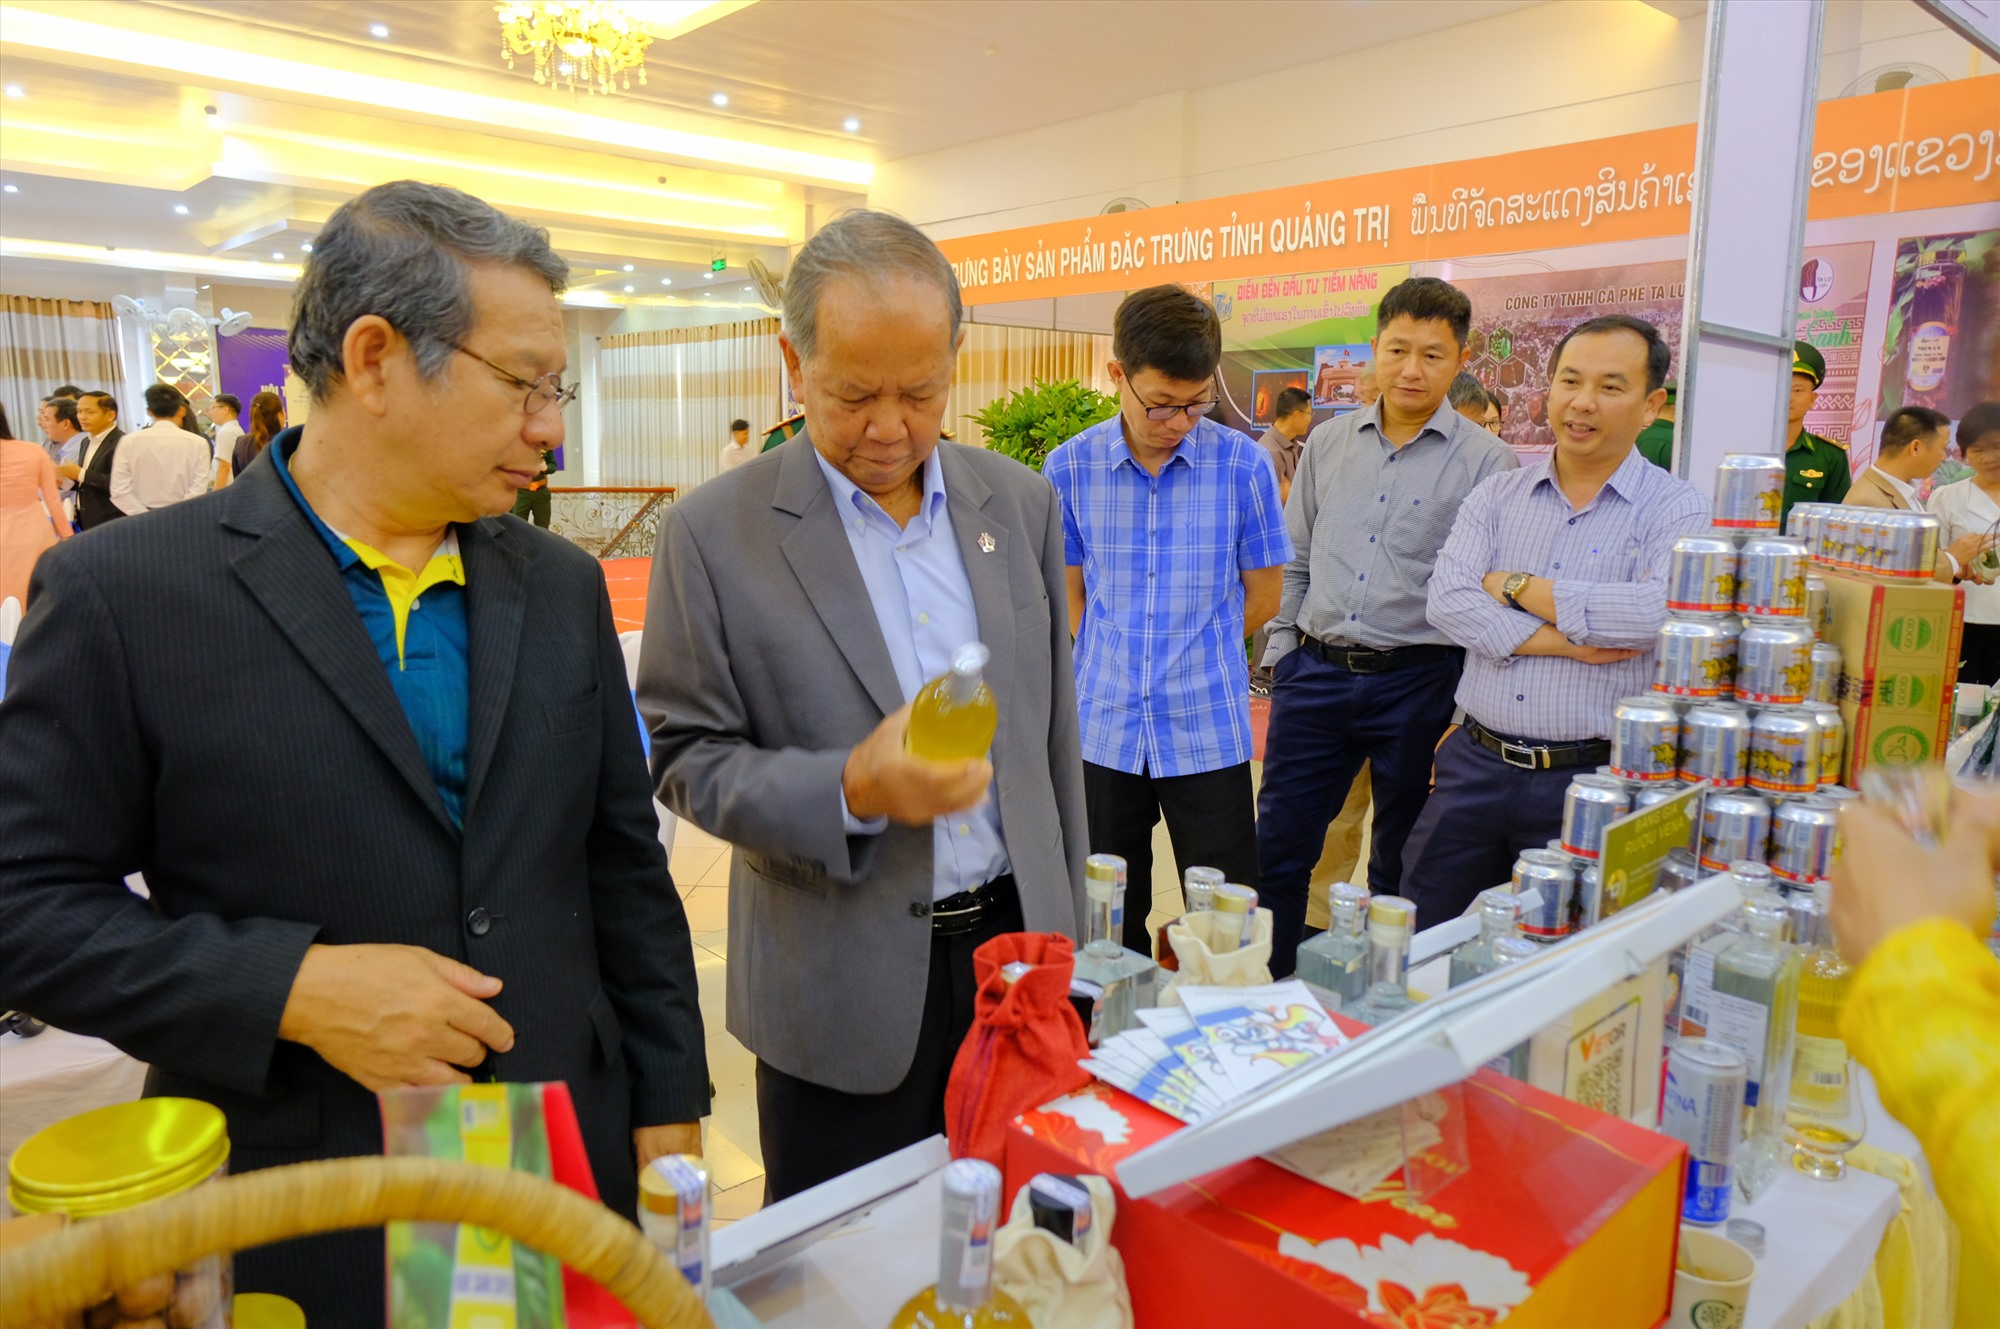 Đại biểu tham quan các gian hàng trưng bày sản phẩm đặc trưng tỉnh Quảng Trị và tỉnh Savannakhet - Ảnh: Trần Tuyền